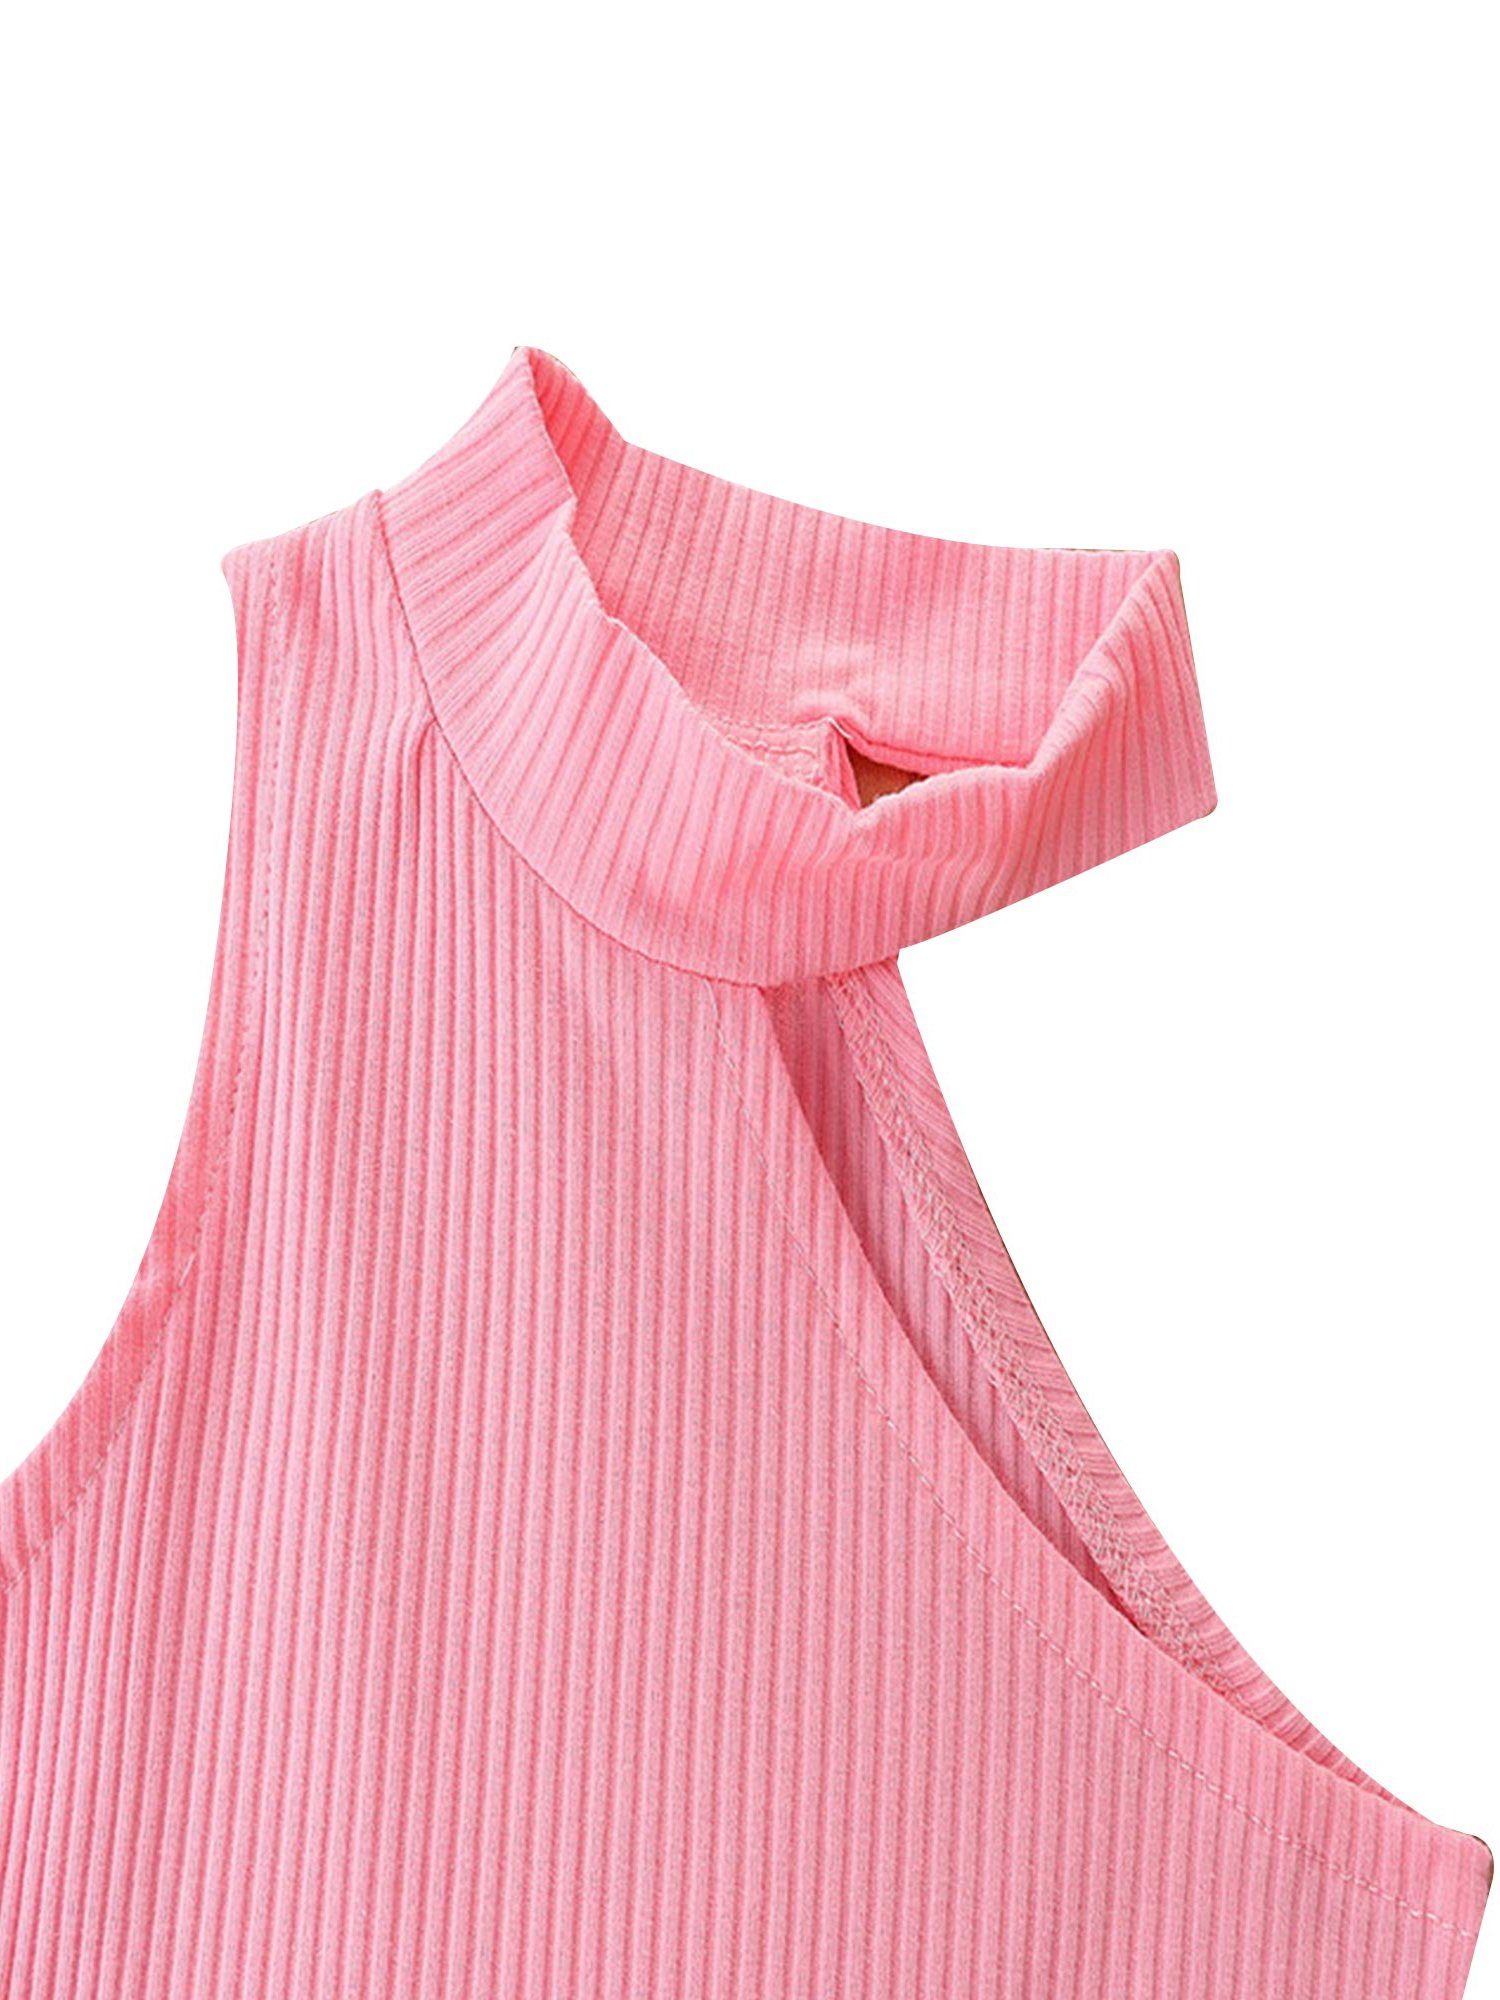 Kinder Mädchen (Gr. 50 - 92) Lapastyle Shirt & Hose Ärmelloses Eine Schulter Oberteil und zerrissene Jeanshose